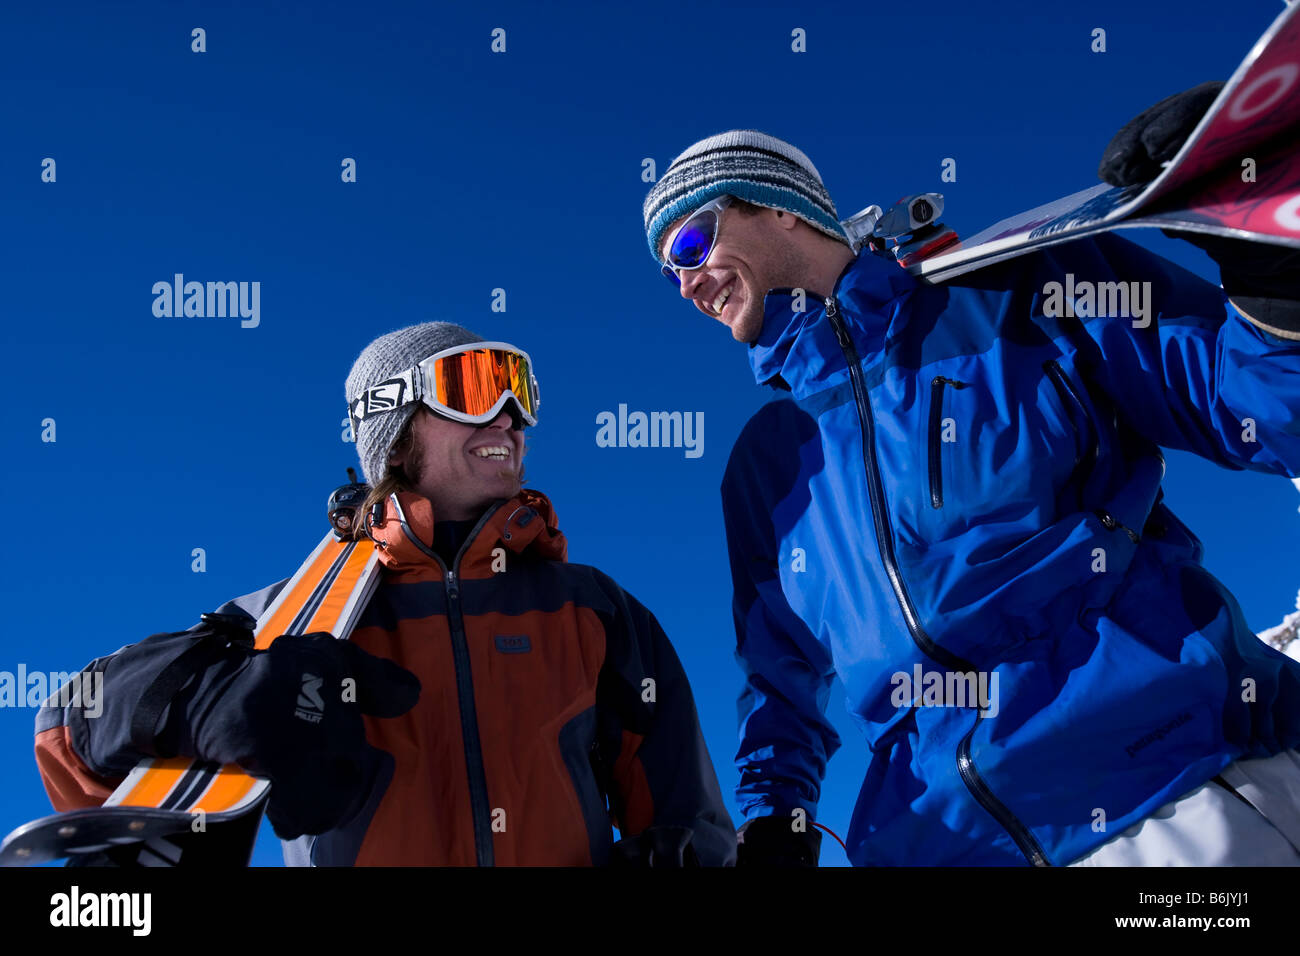 Frankreich, Chamonix. Zwei Männer teilen einen Witz auf die Weile hält Skier an der Spitze eines Aufzugs Stockfoto